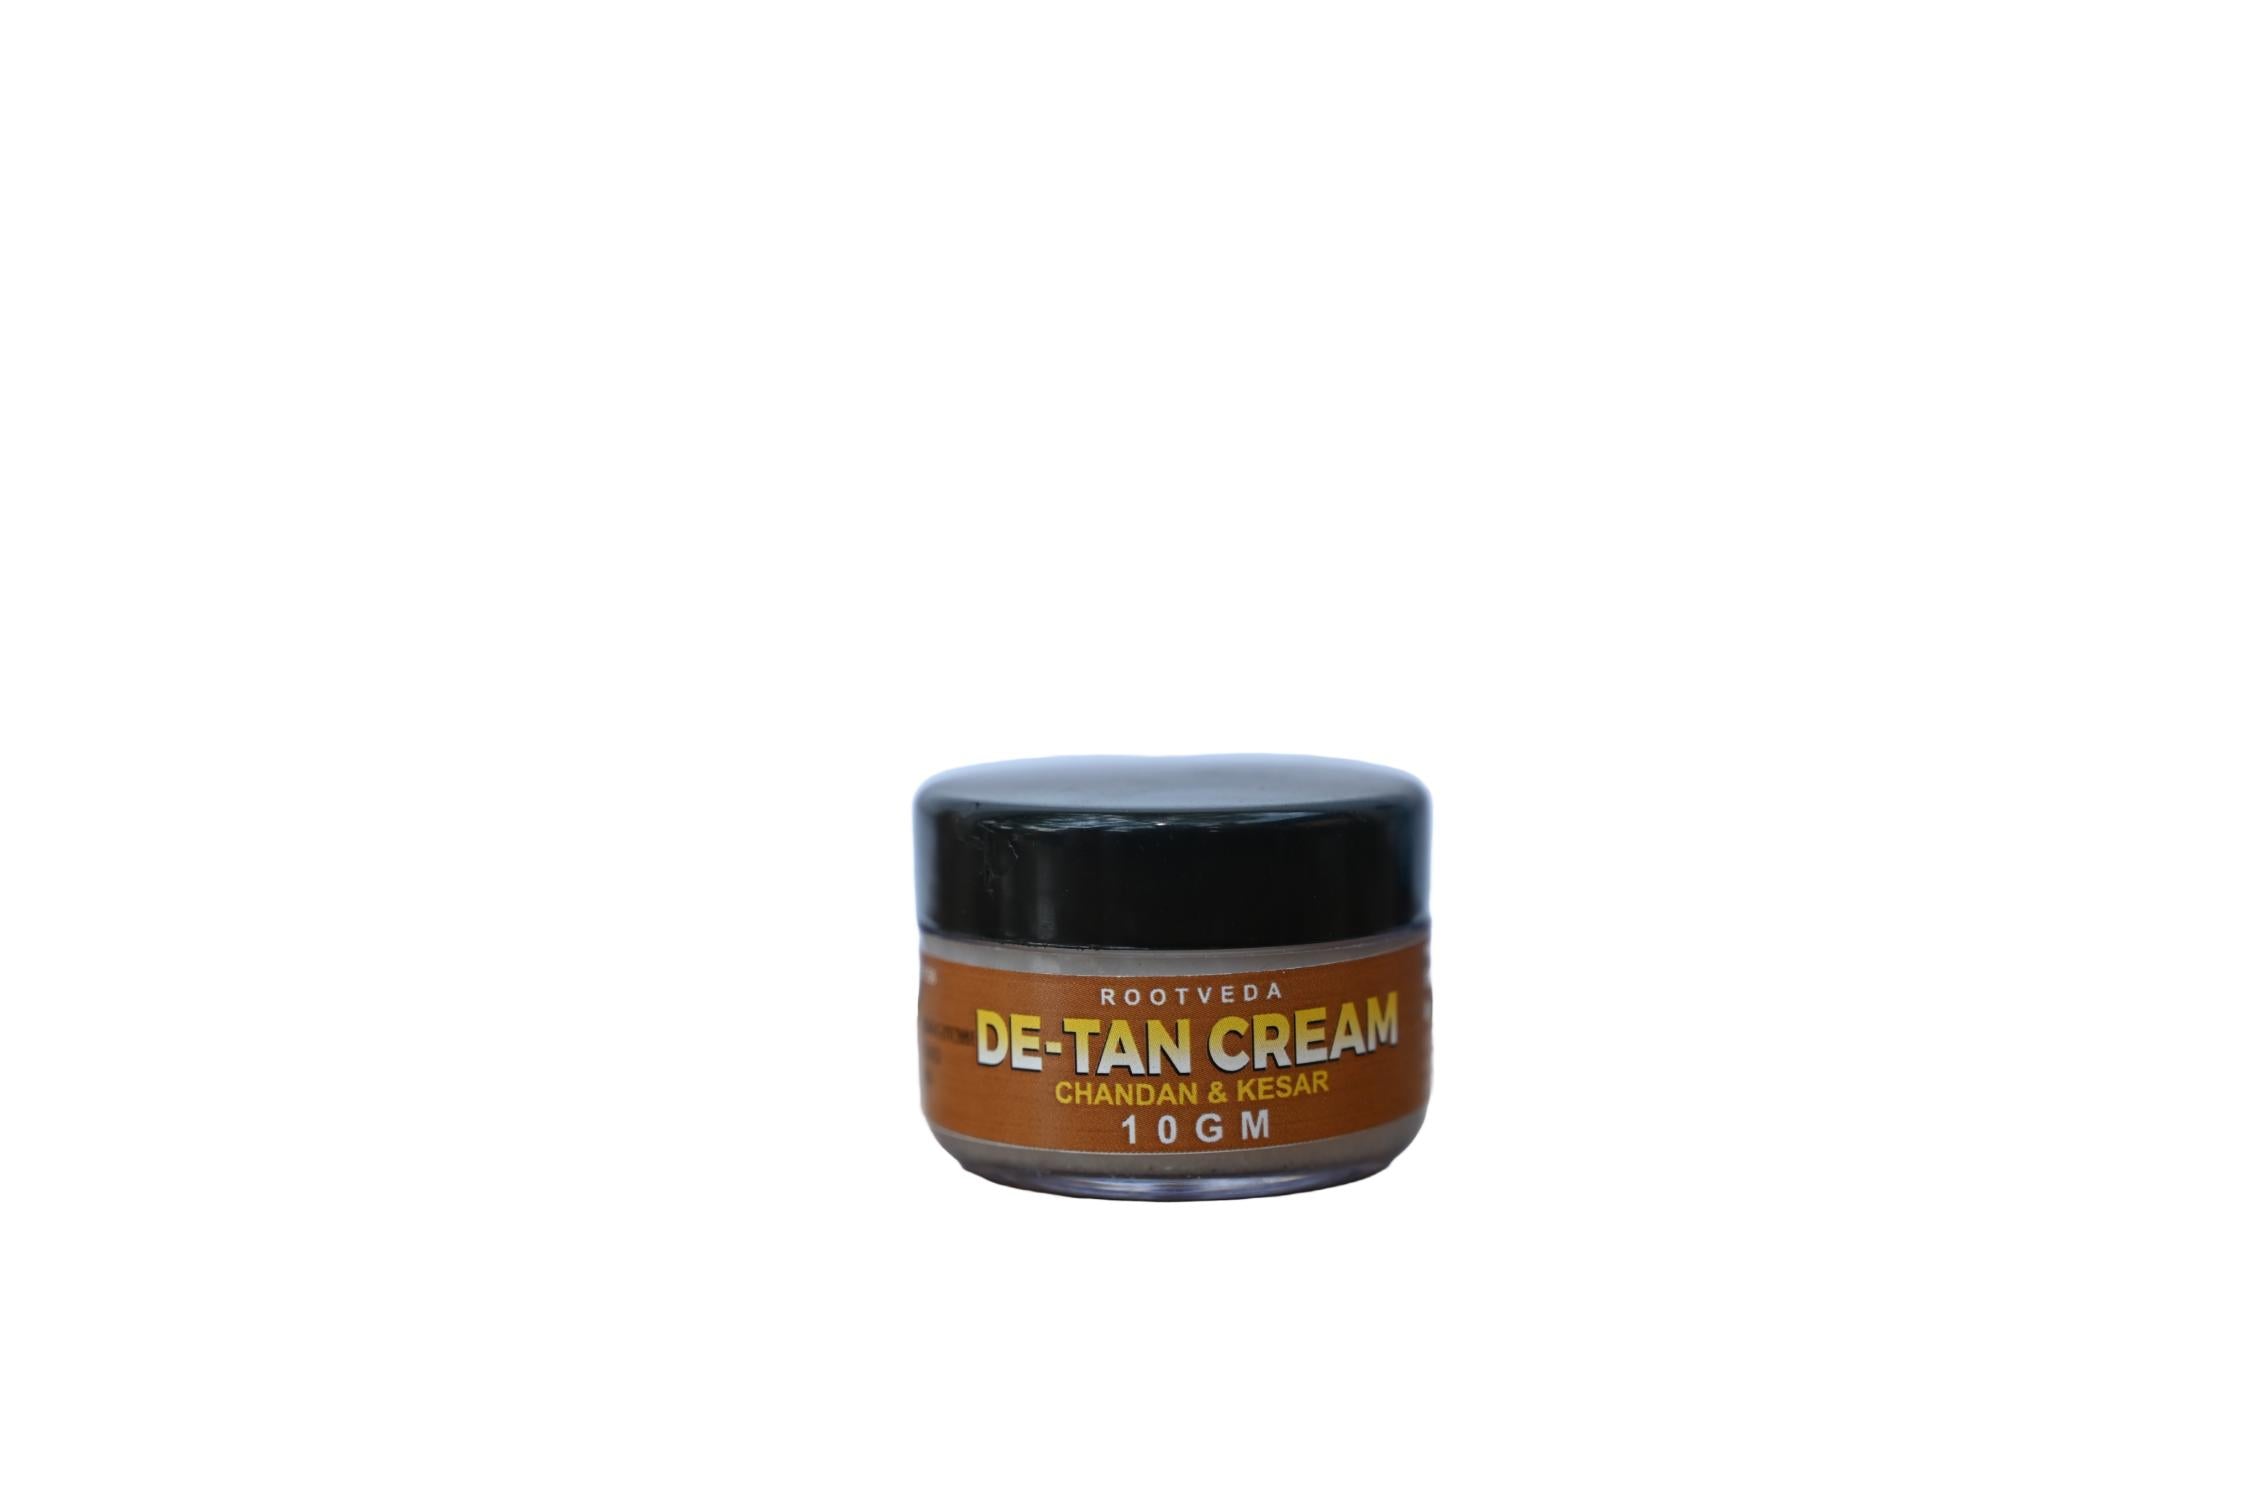 RootVeda De-Tan Cream with C&K